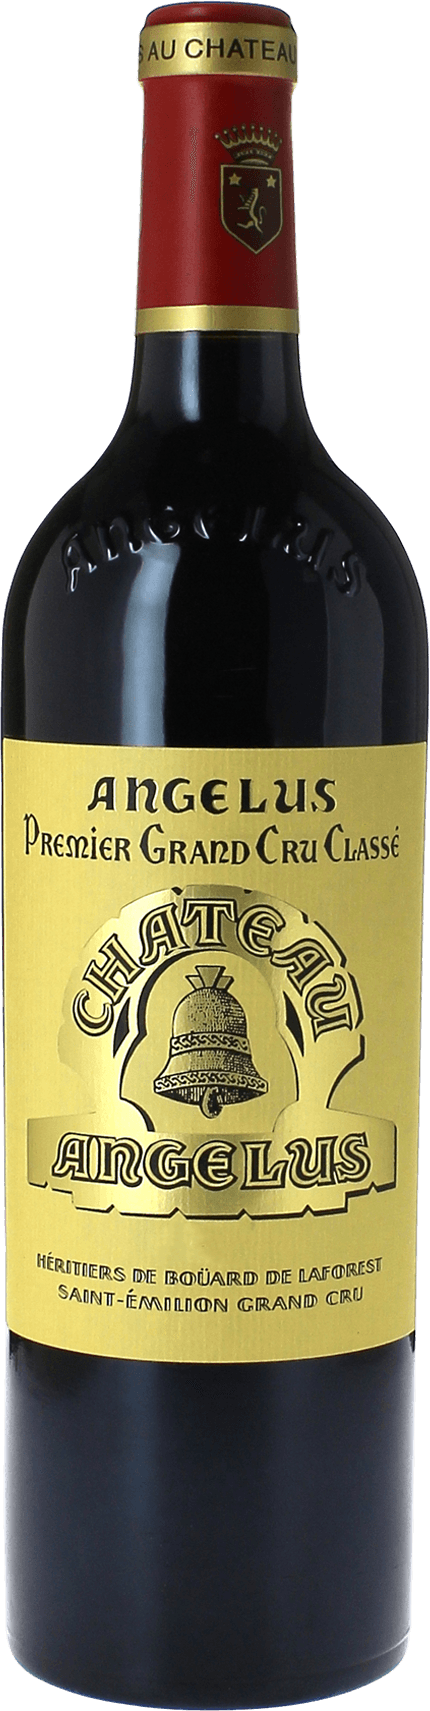 Angelus 1998 1er Grand cru B class Saint-Emilion, Bordeaux rouge